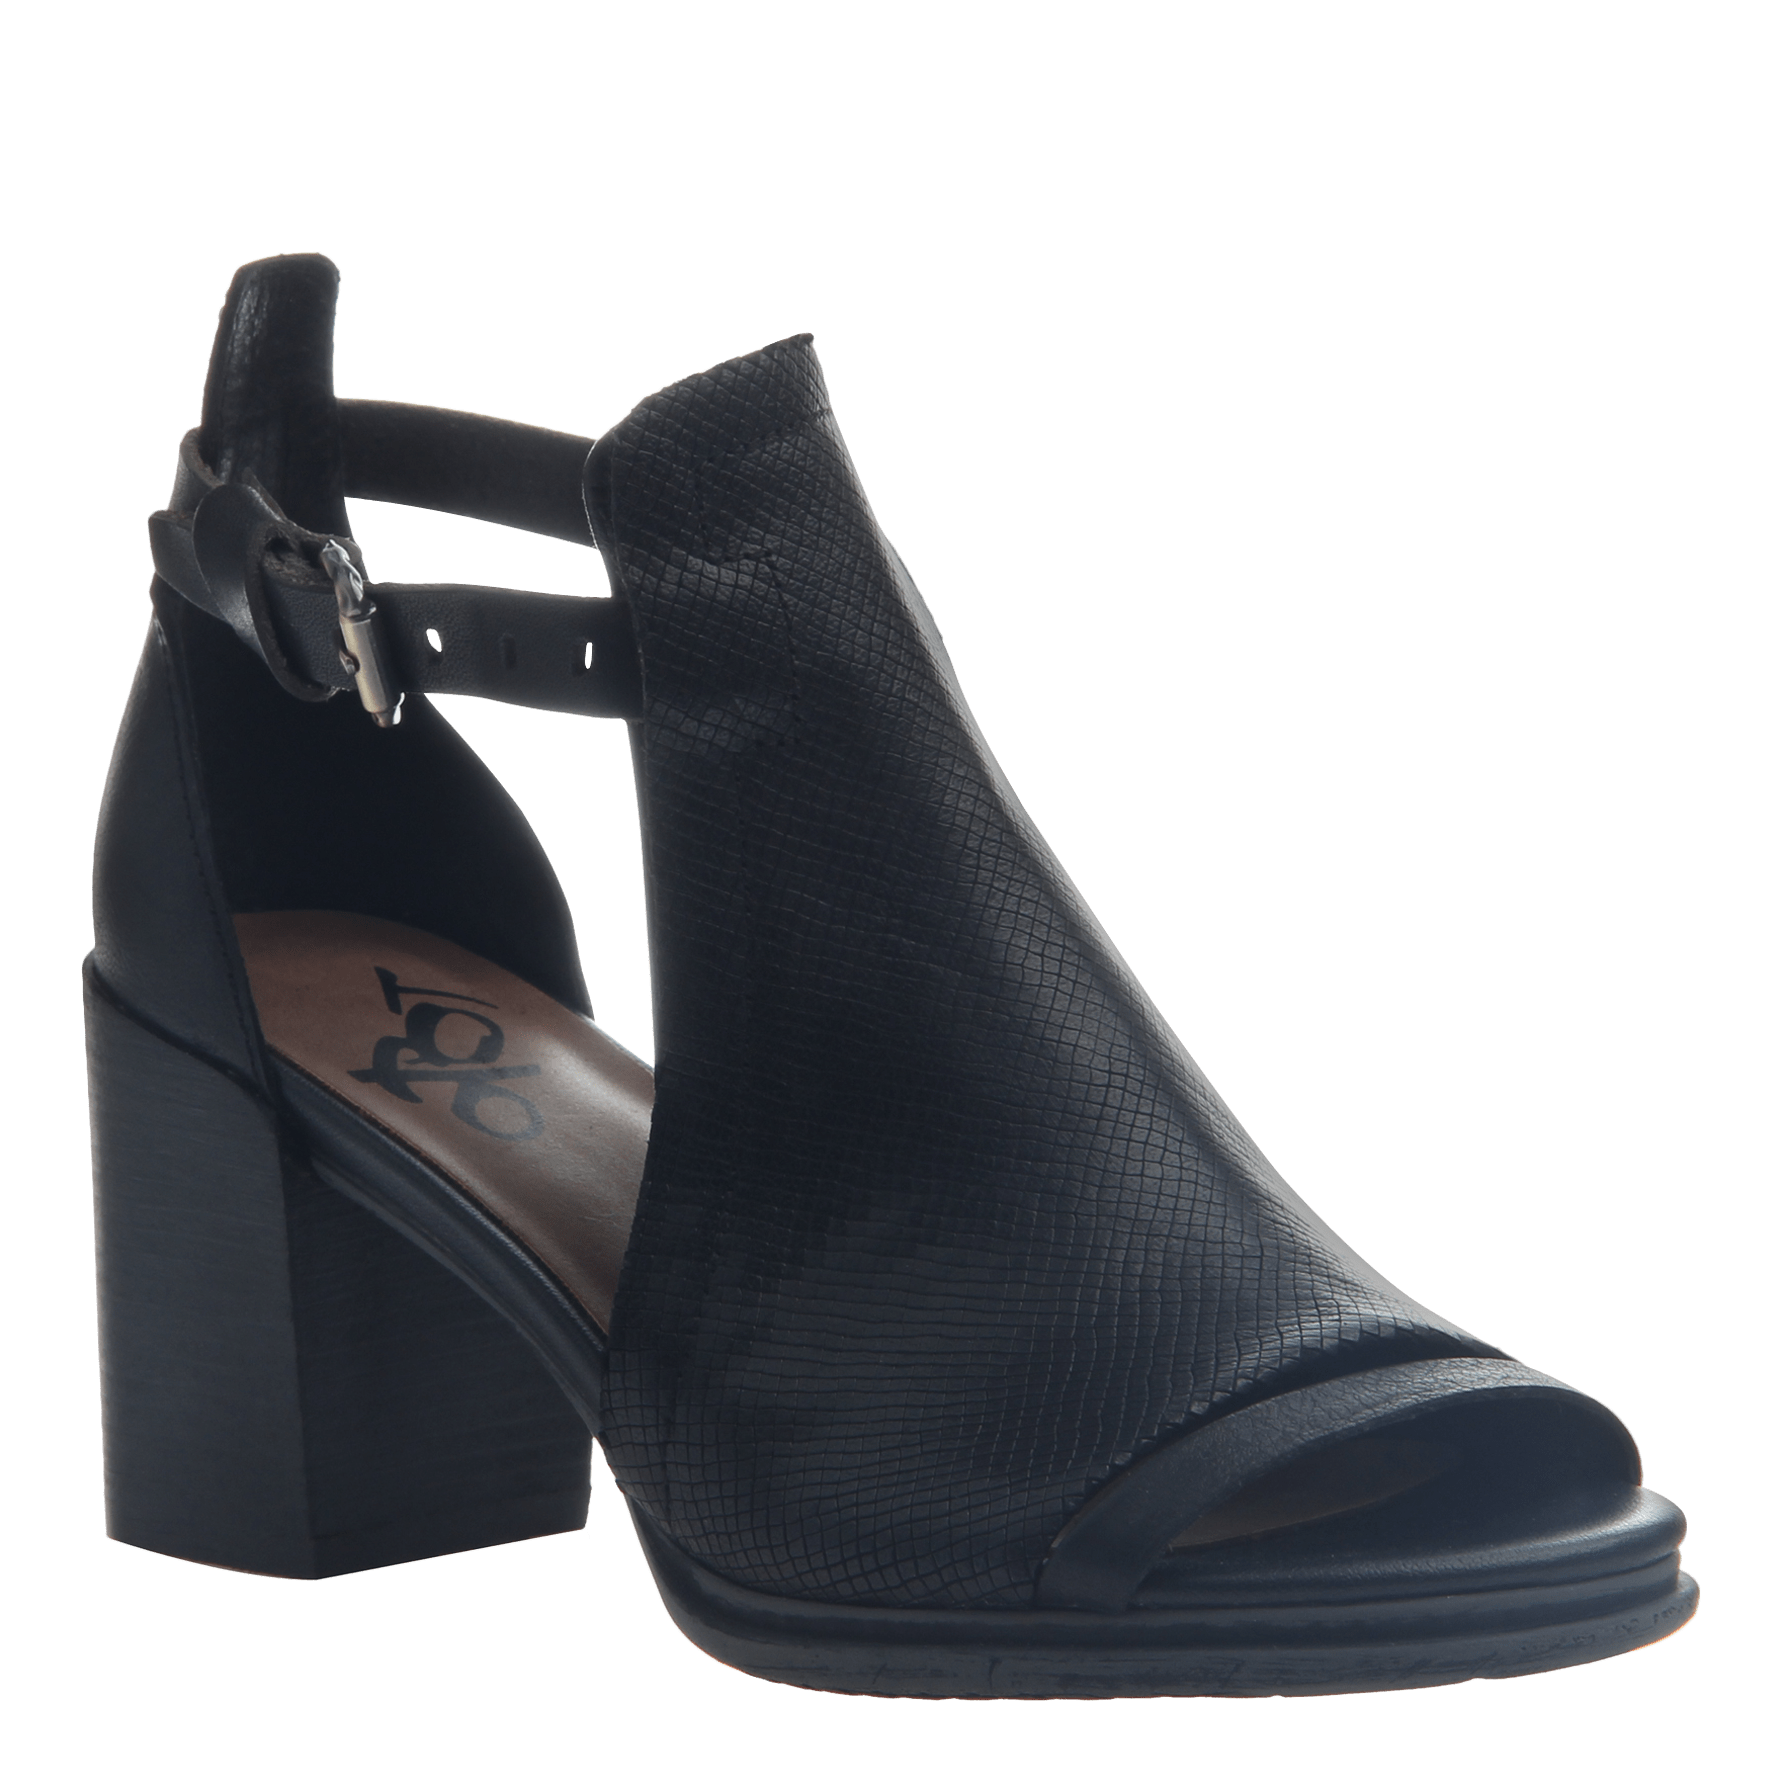 black heel shoes